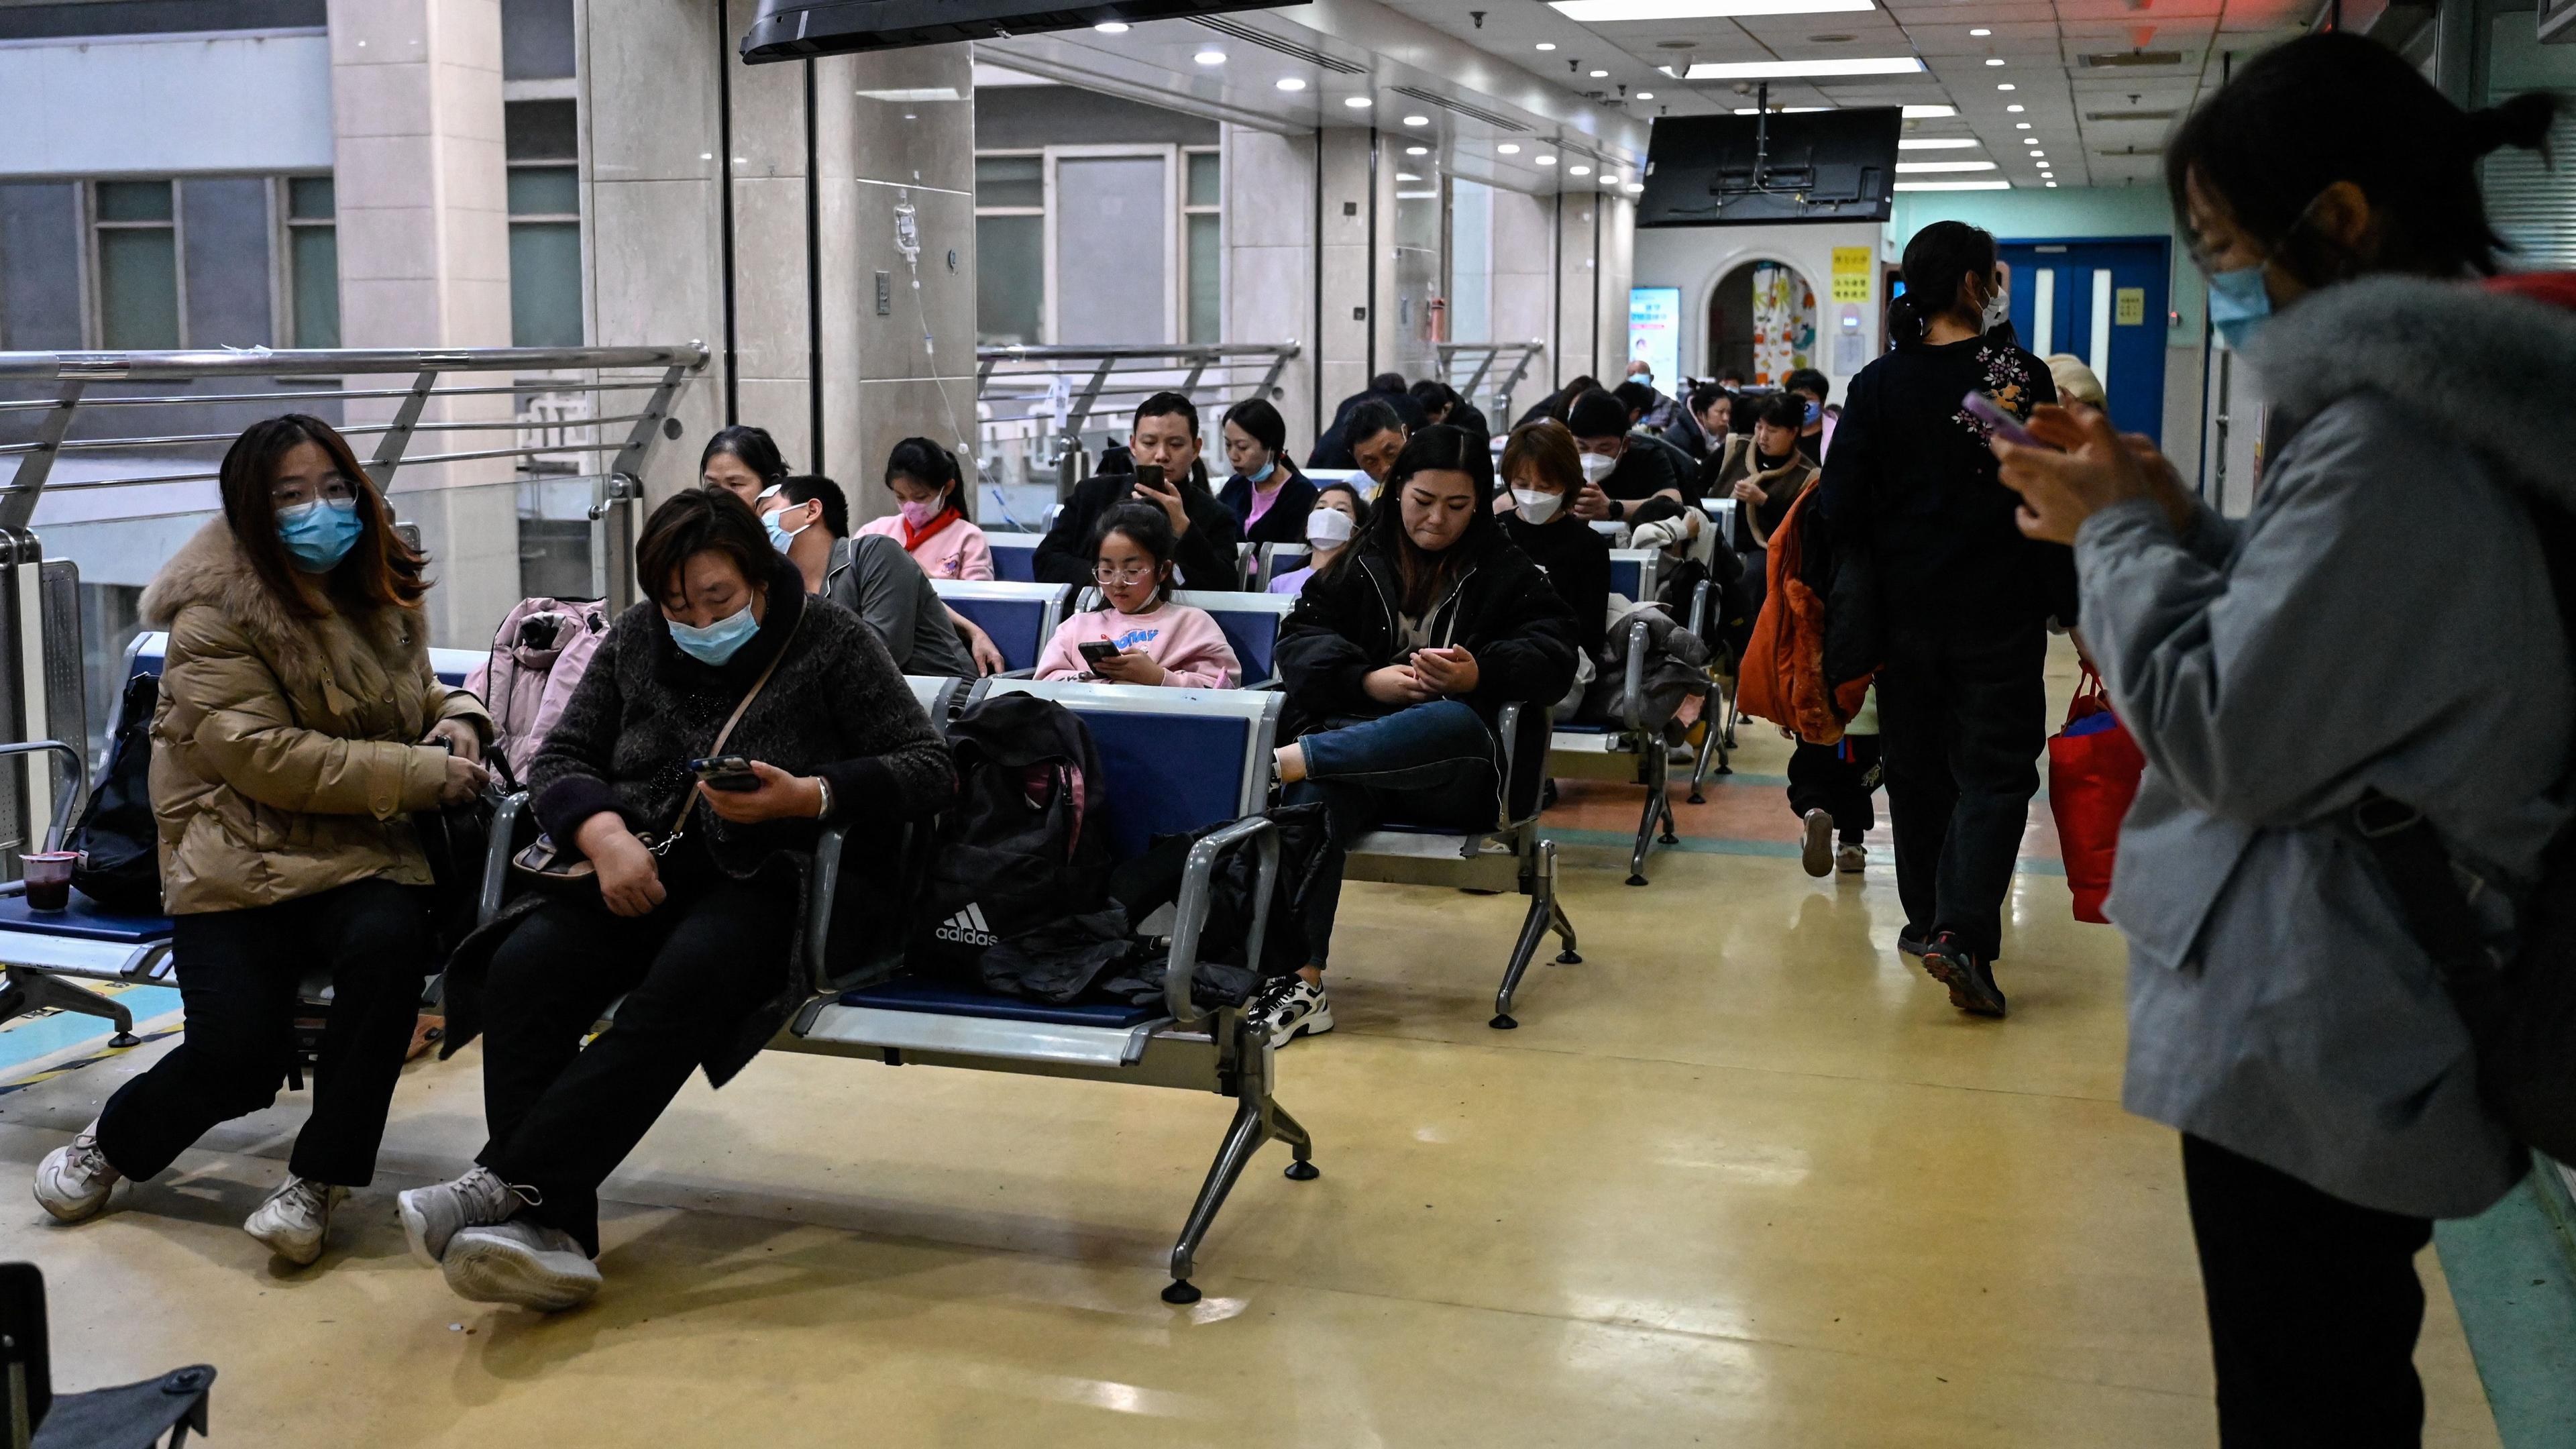 Det är fortfarande många som behöver söka vård för lungsjukdomar i flera stora städer i Kina, och väntetiderna är långa. Foto: Jade Gao/AFP via Getty Images